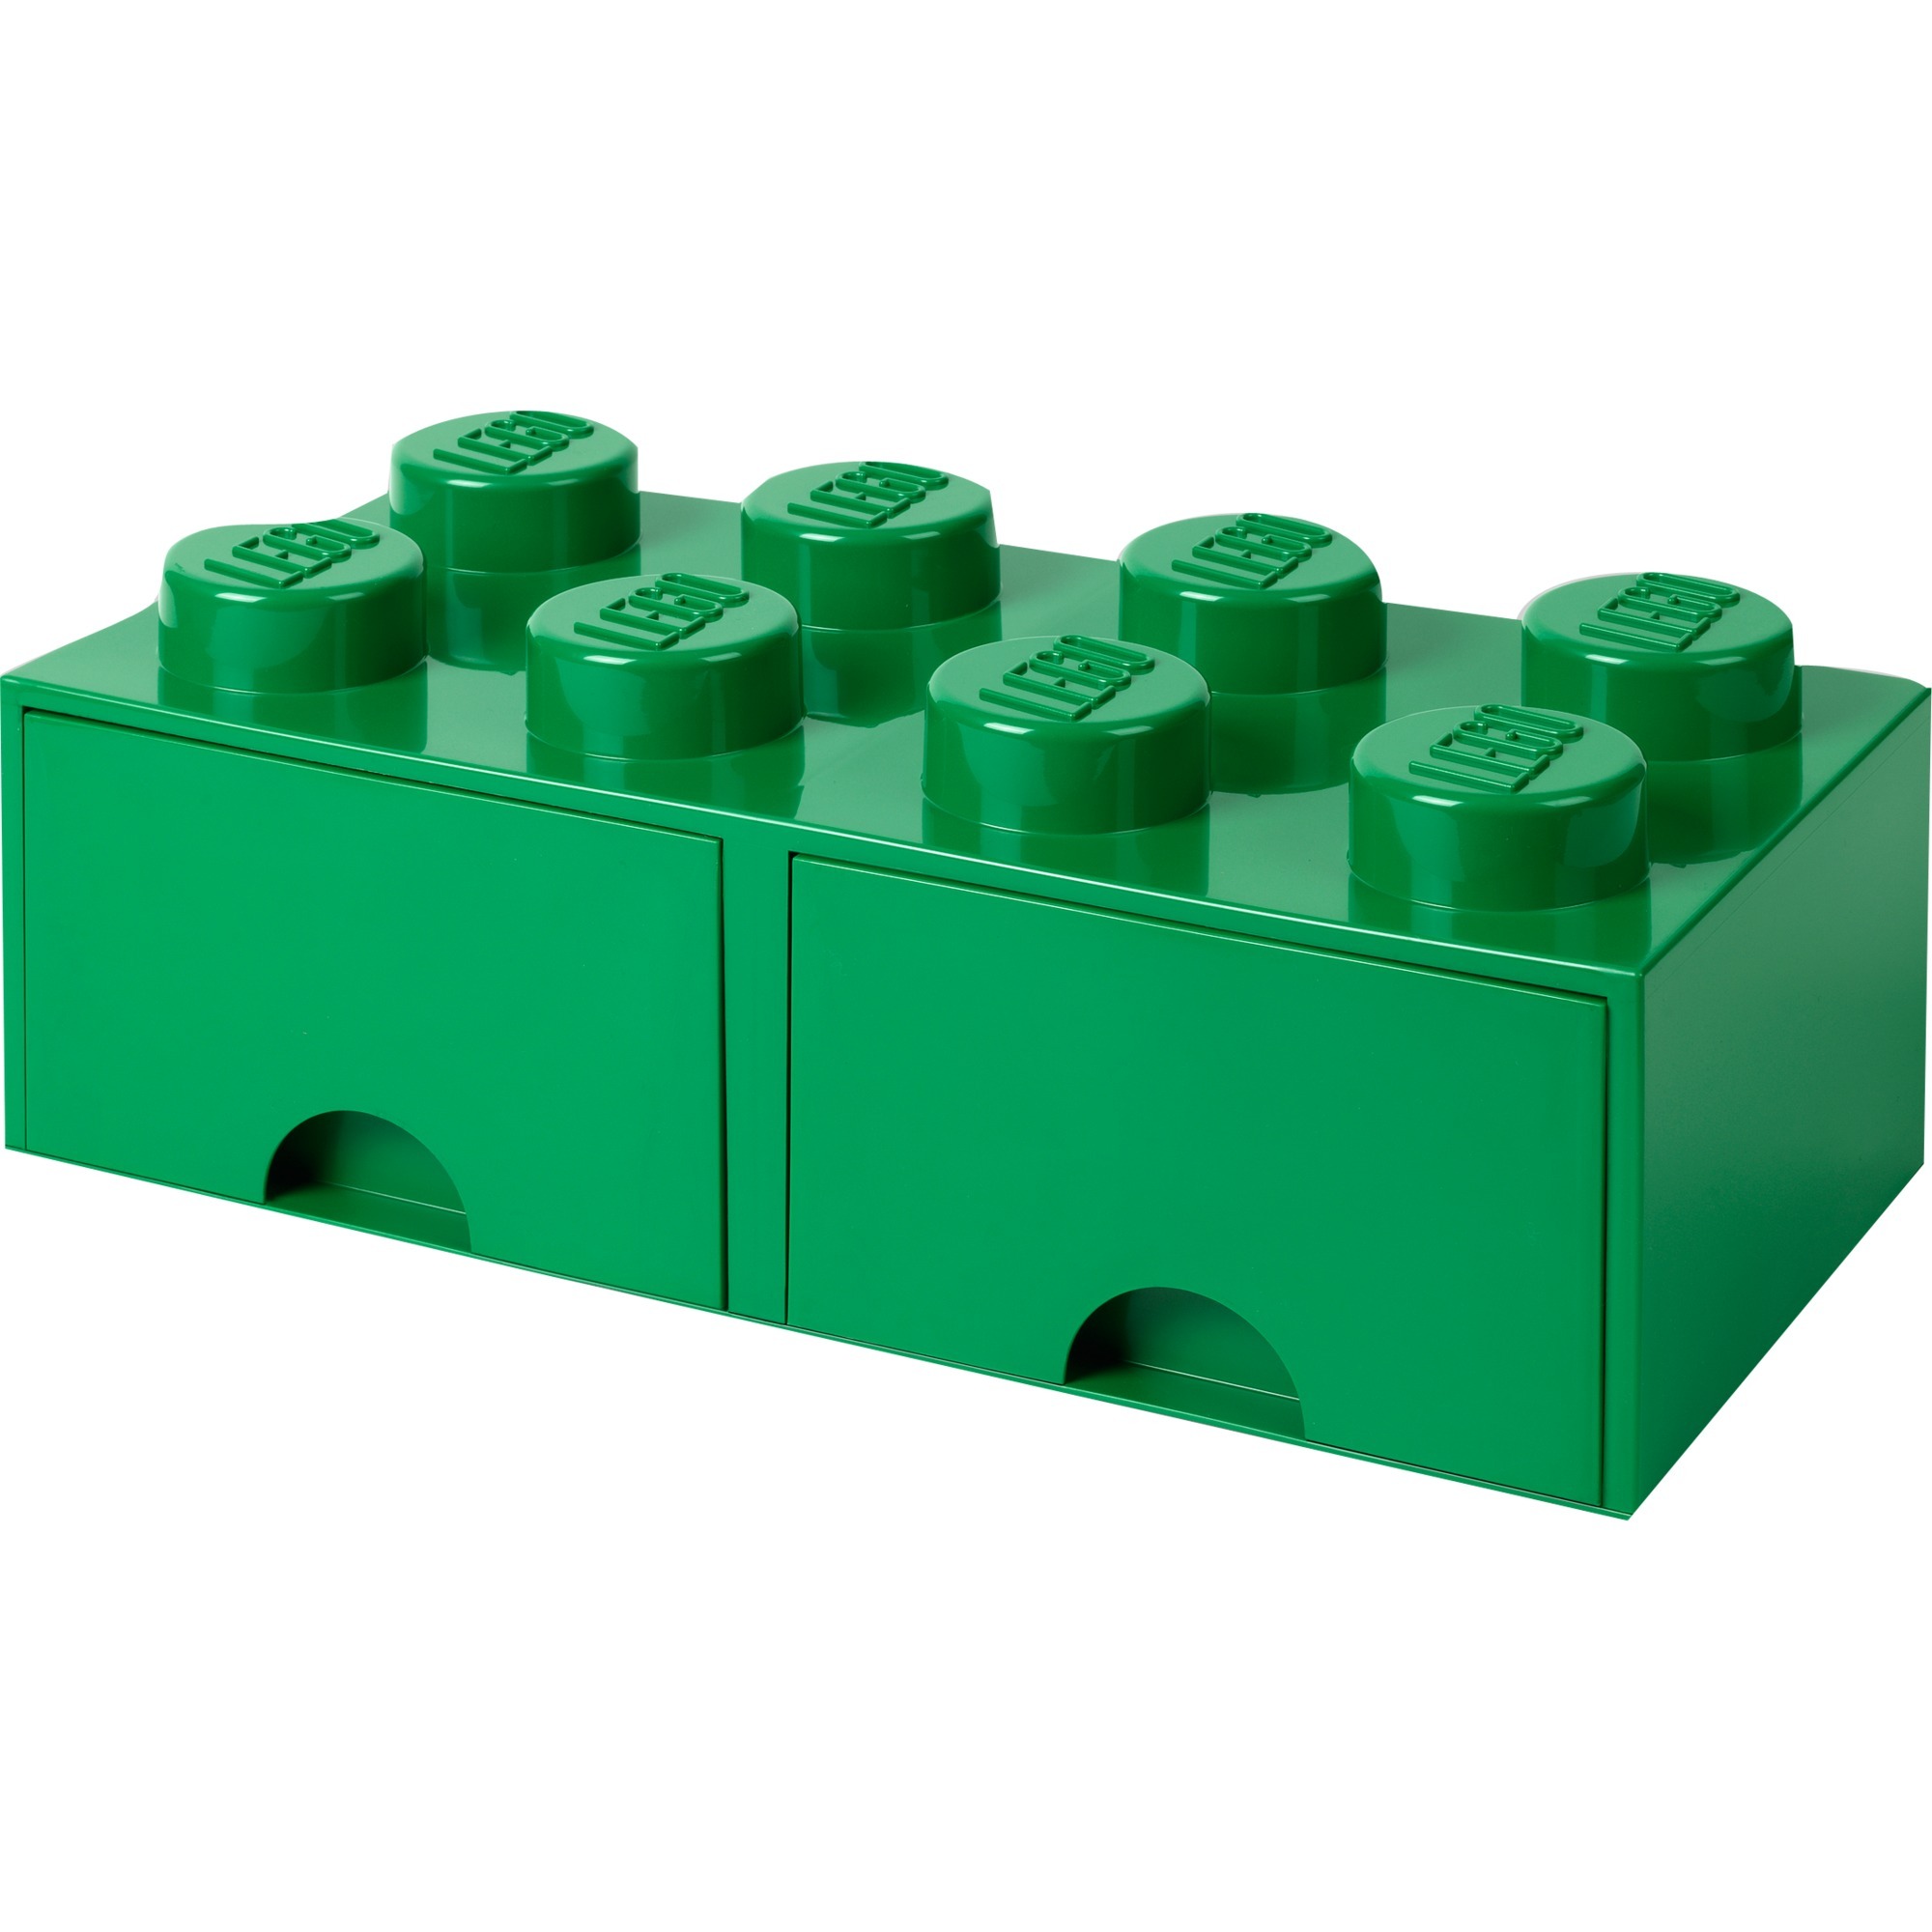 Image of Alternate - LEGO Brick Drawer 8 grün, Aufbewahrungsbox online einkaufen bei Alternate